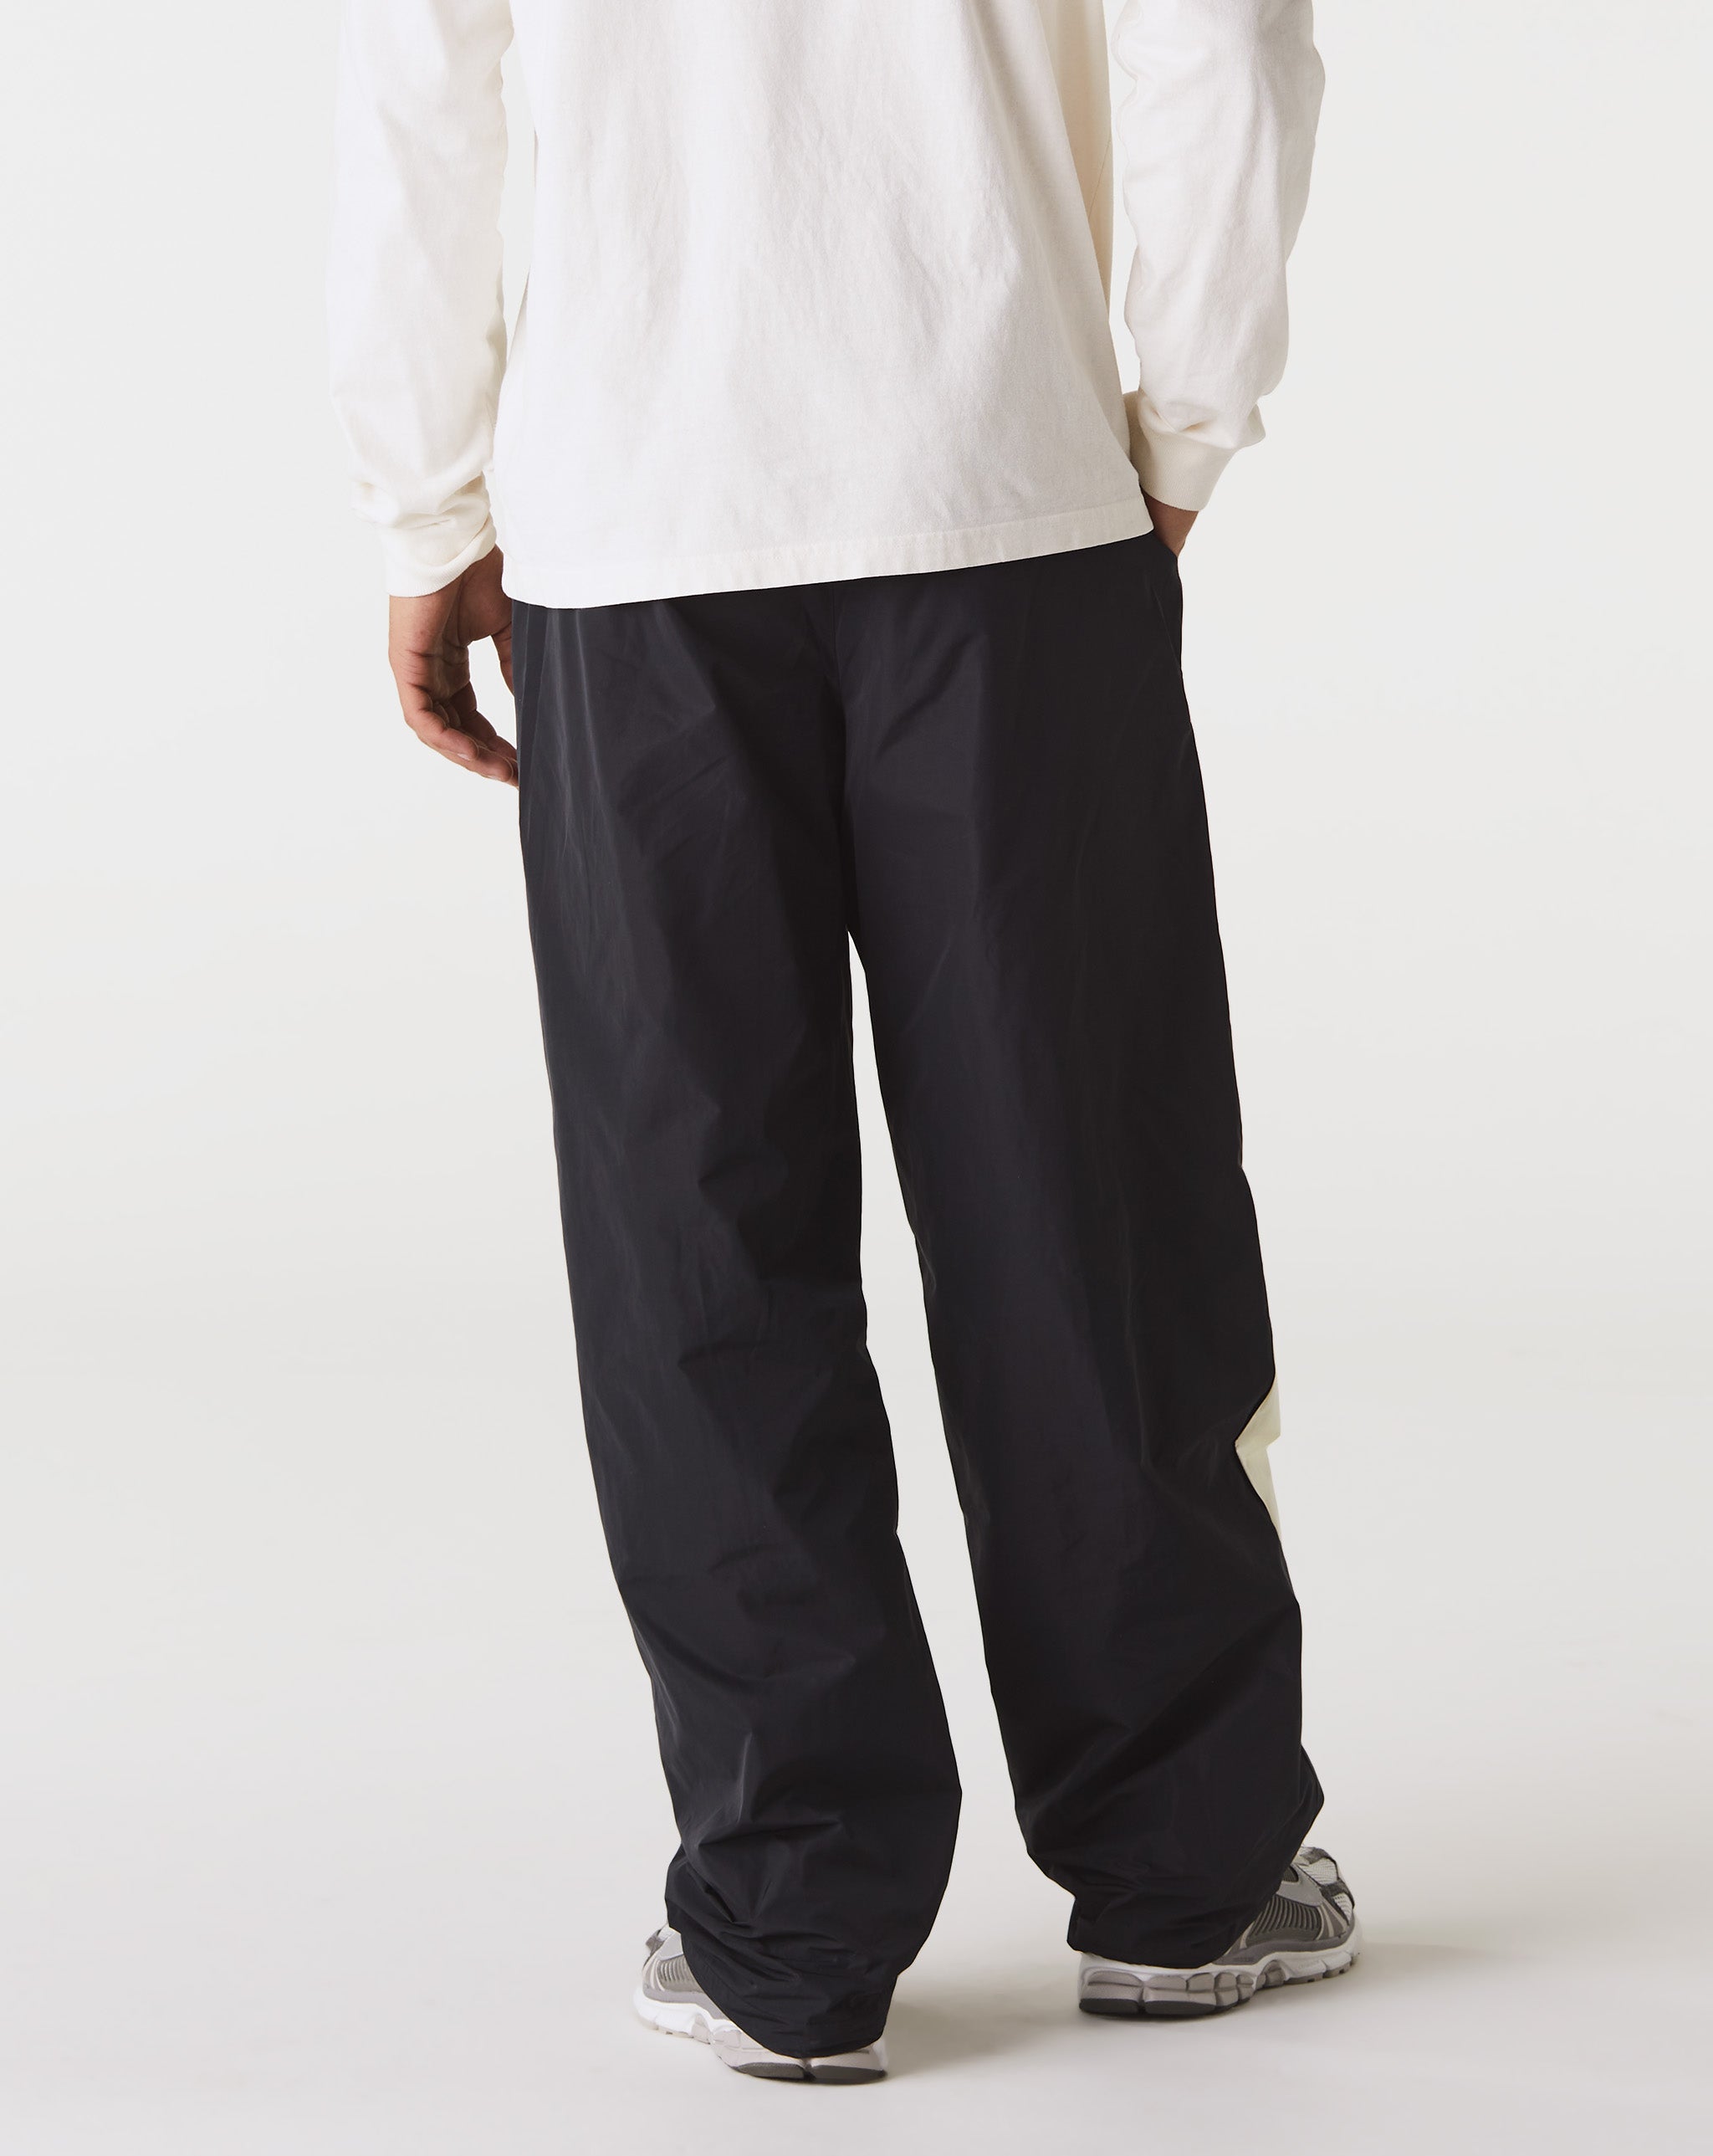 Nike Swoosh Woven Pants  - Cheap Cerbe Jordan outlet